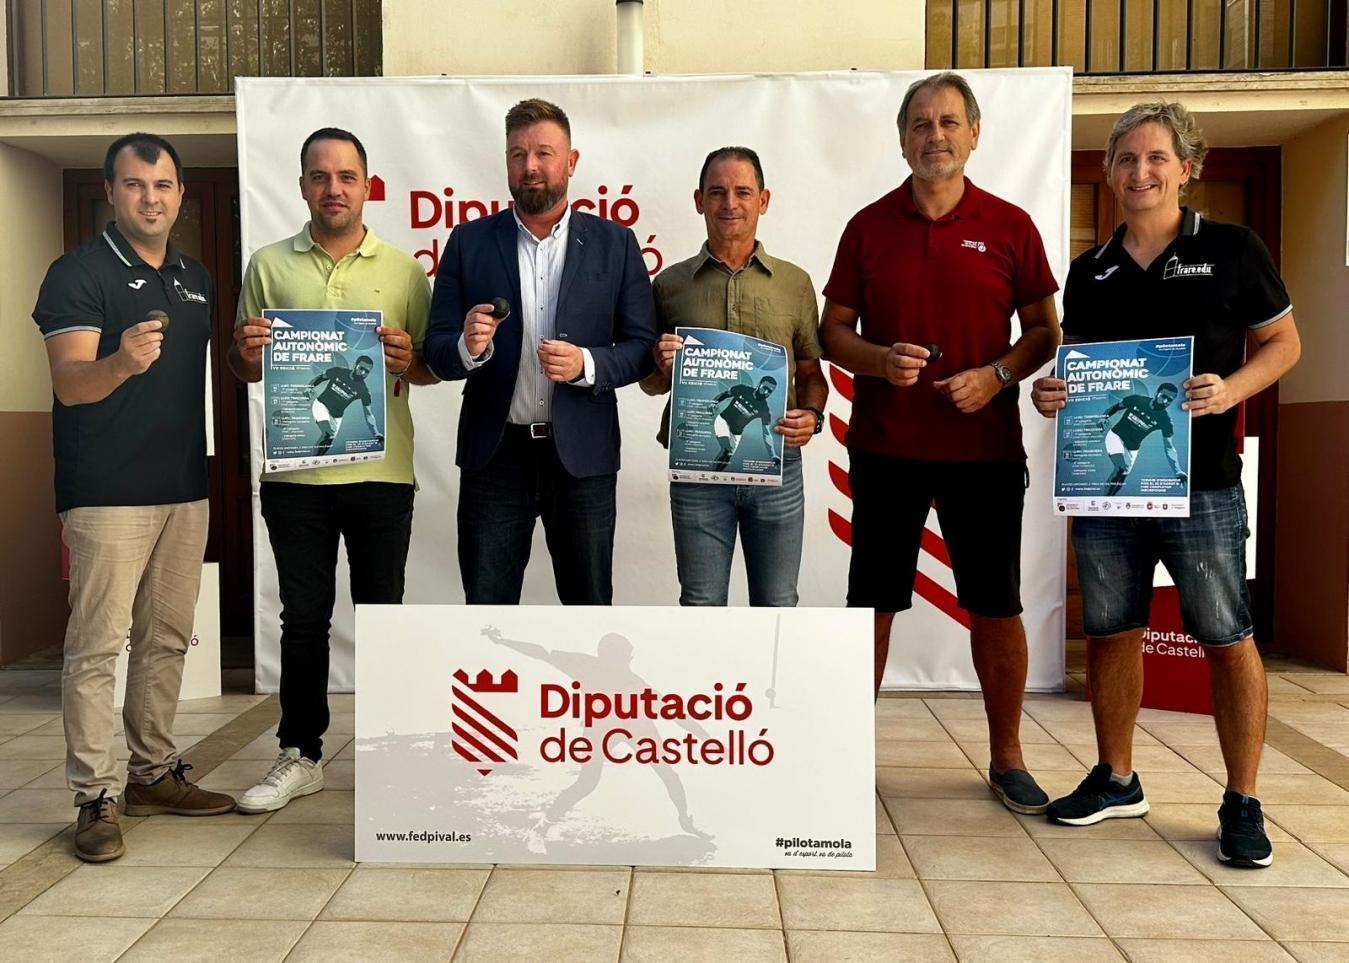 La Diputación de Castellón acoge la presentación del VII Campeonato Autonómico de Frare